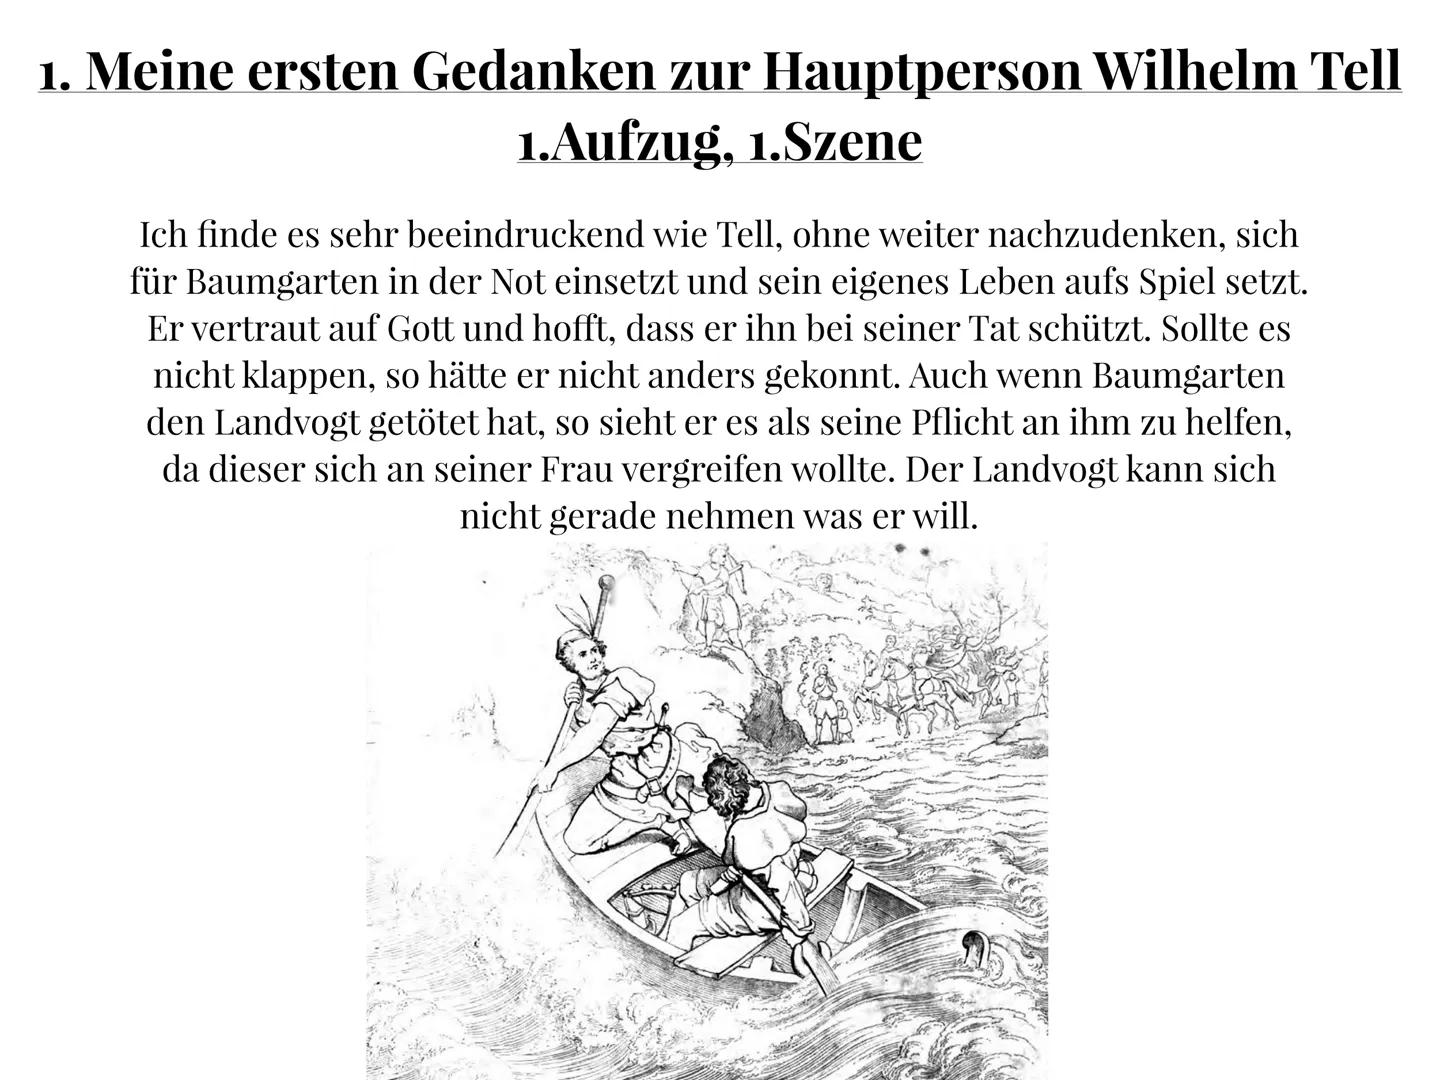 Lesetagebuch
über
Wilhelm Tell
von Friedrich Schiller
von
Nina Kimmel
Klasse 7c Inhaltsverzeichnis
1. Meine ersten Gedanken zur Hauptperson 